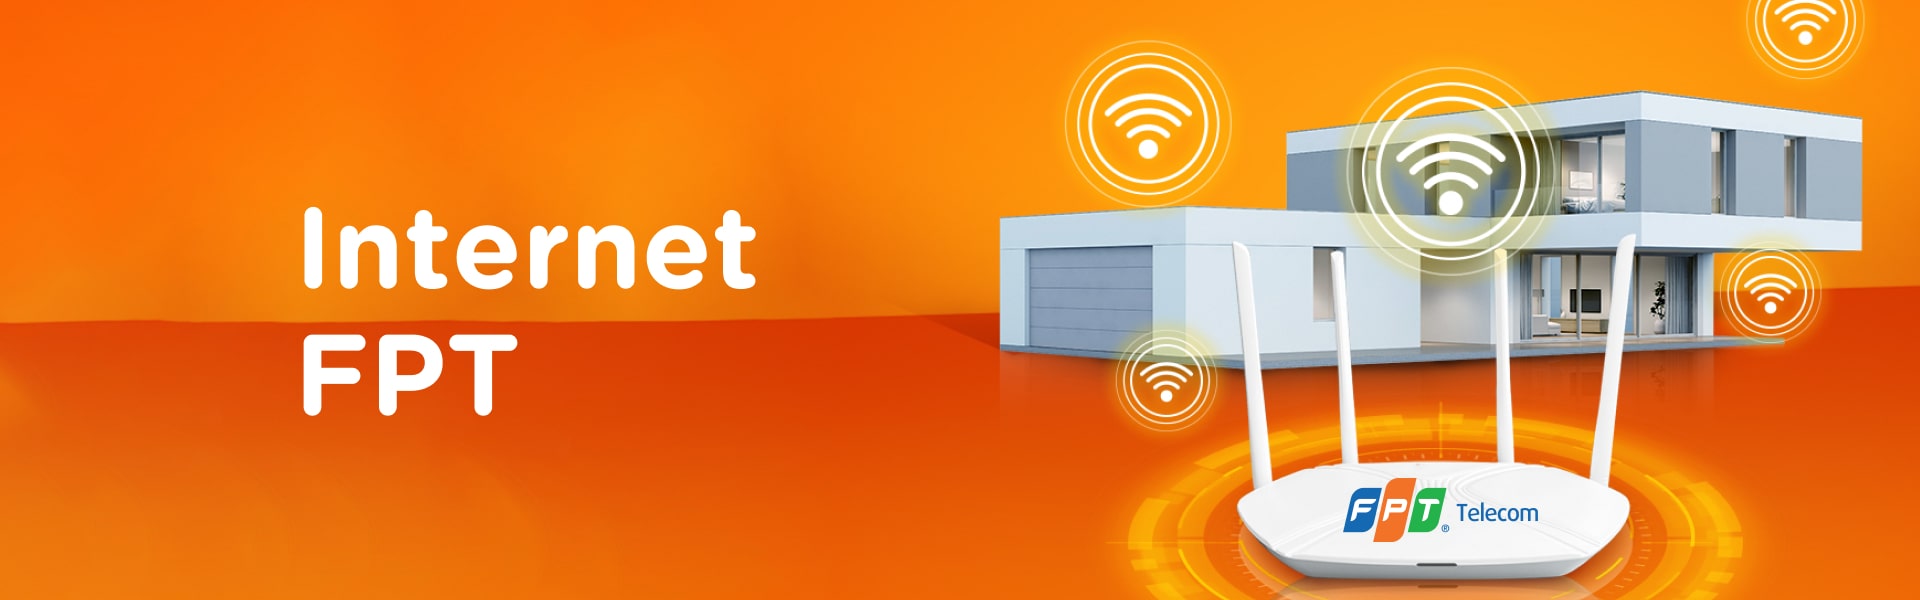 Các Ưu Đãi Khuyến Mại Hấp Dẫn khi Lắp Mạng Wifi FPT